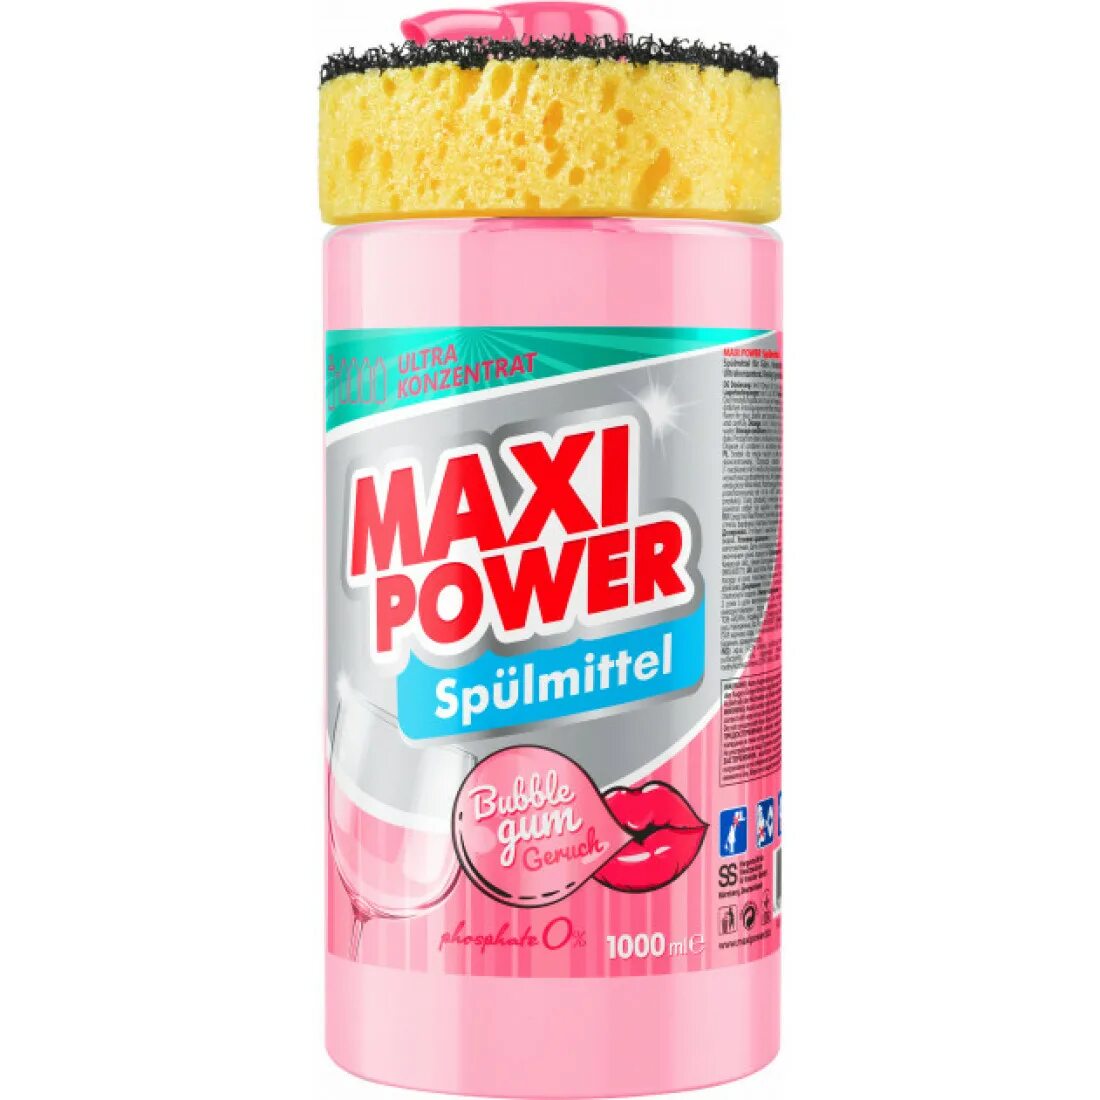 Maxi power. Maxi Power средство для мытья посуды. Моющее для посу лы Максвин. Гель для посуды бабл. Порошок Maxi Power.